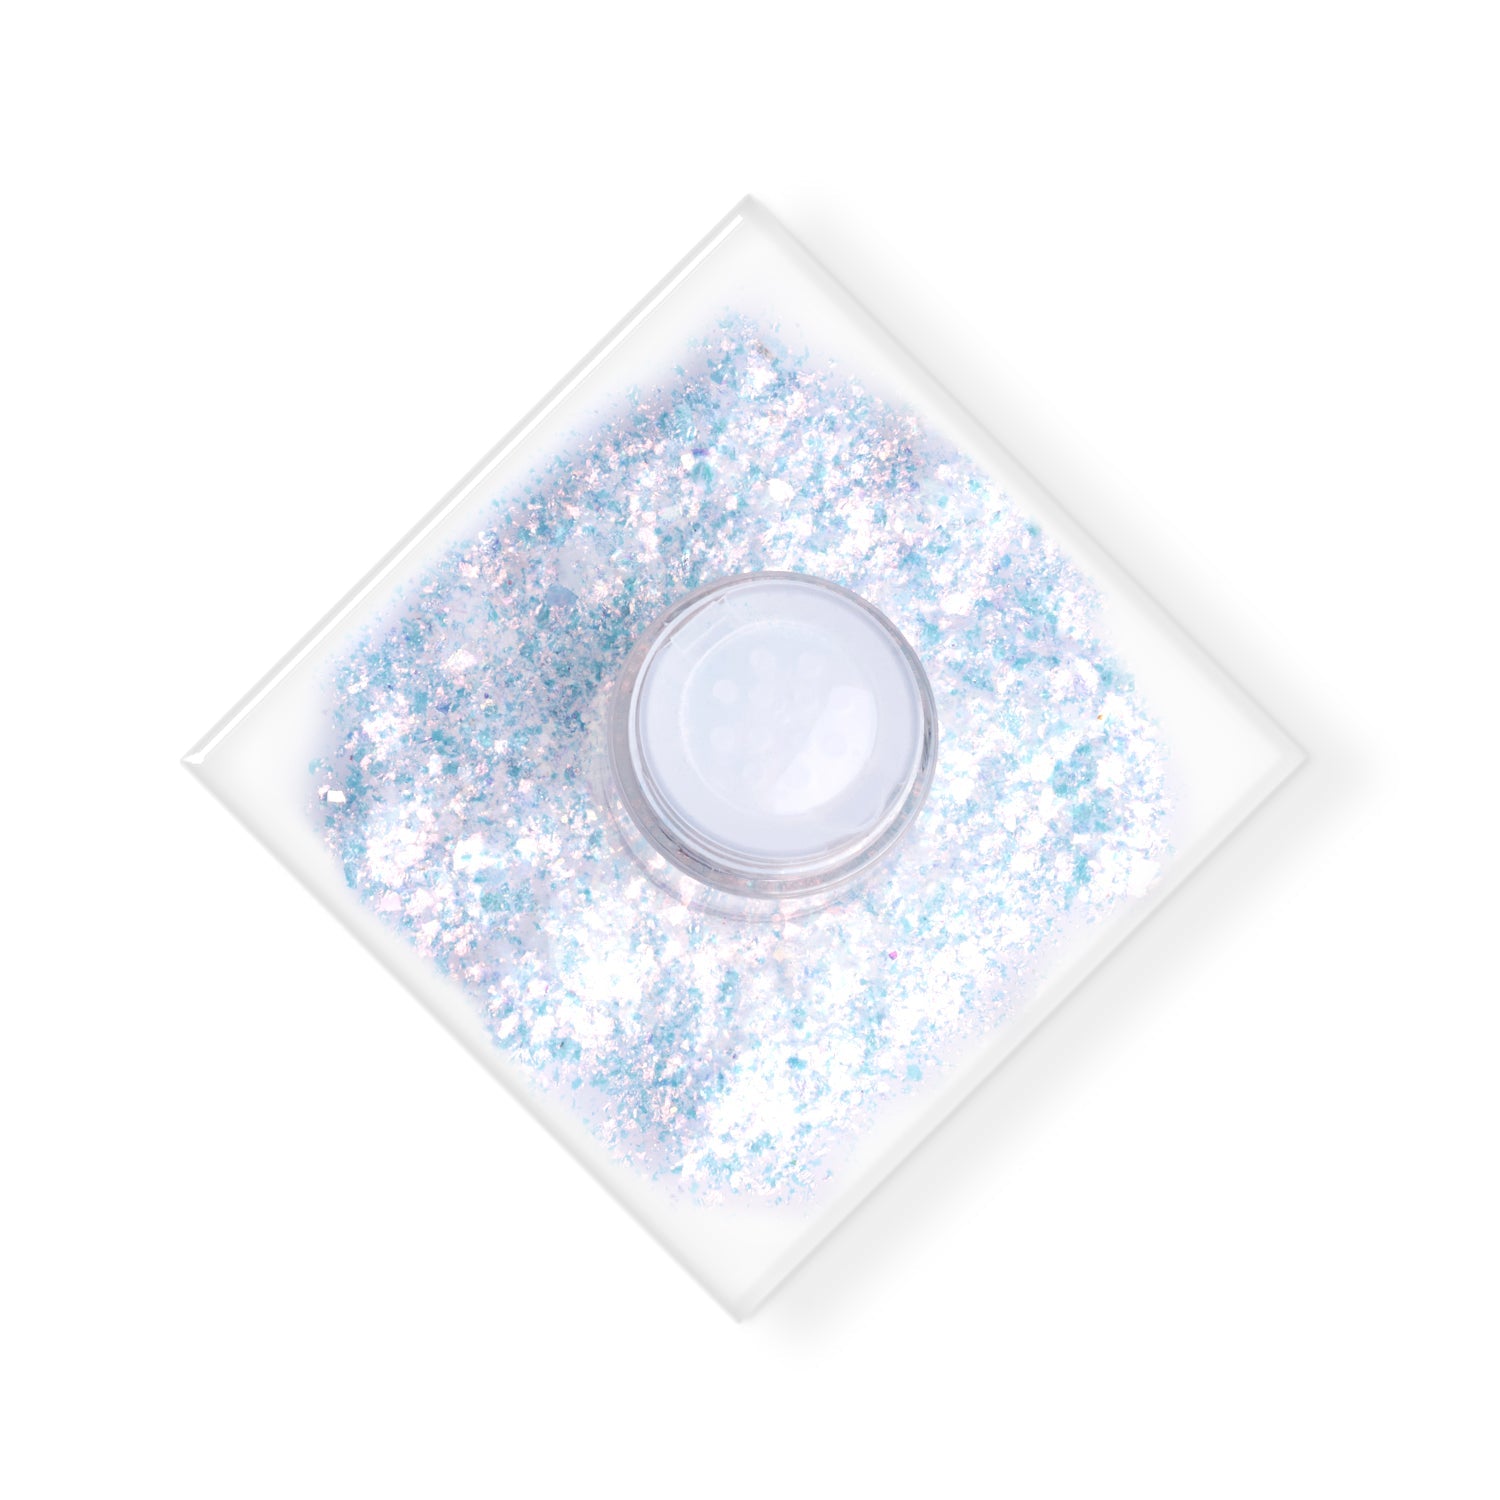 PAC Cosmetics Dazzle Dust Glitter (0.25g) #Color_Unicorn